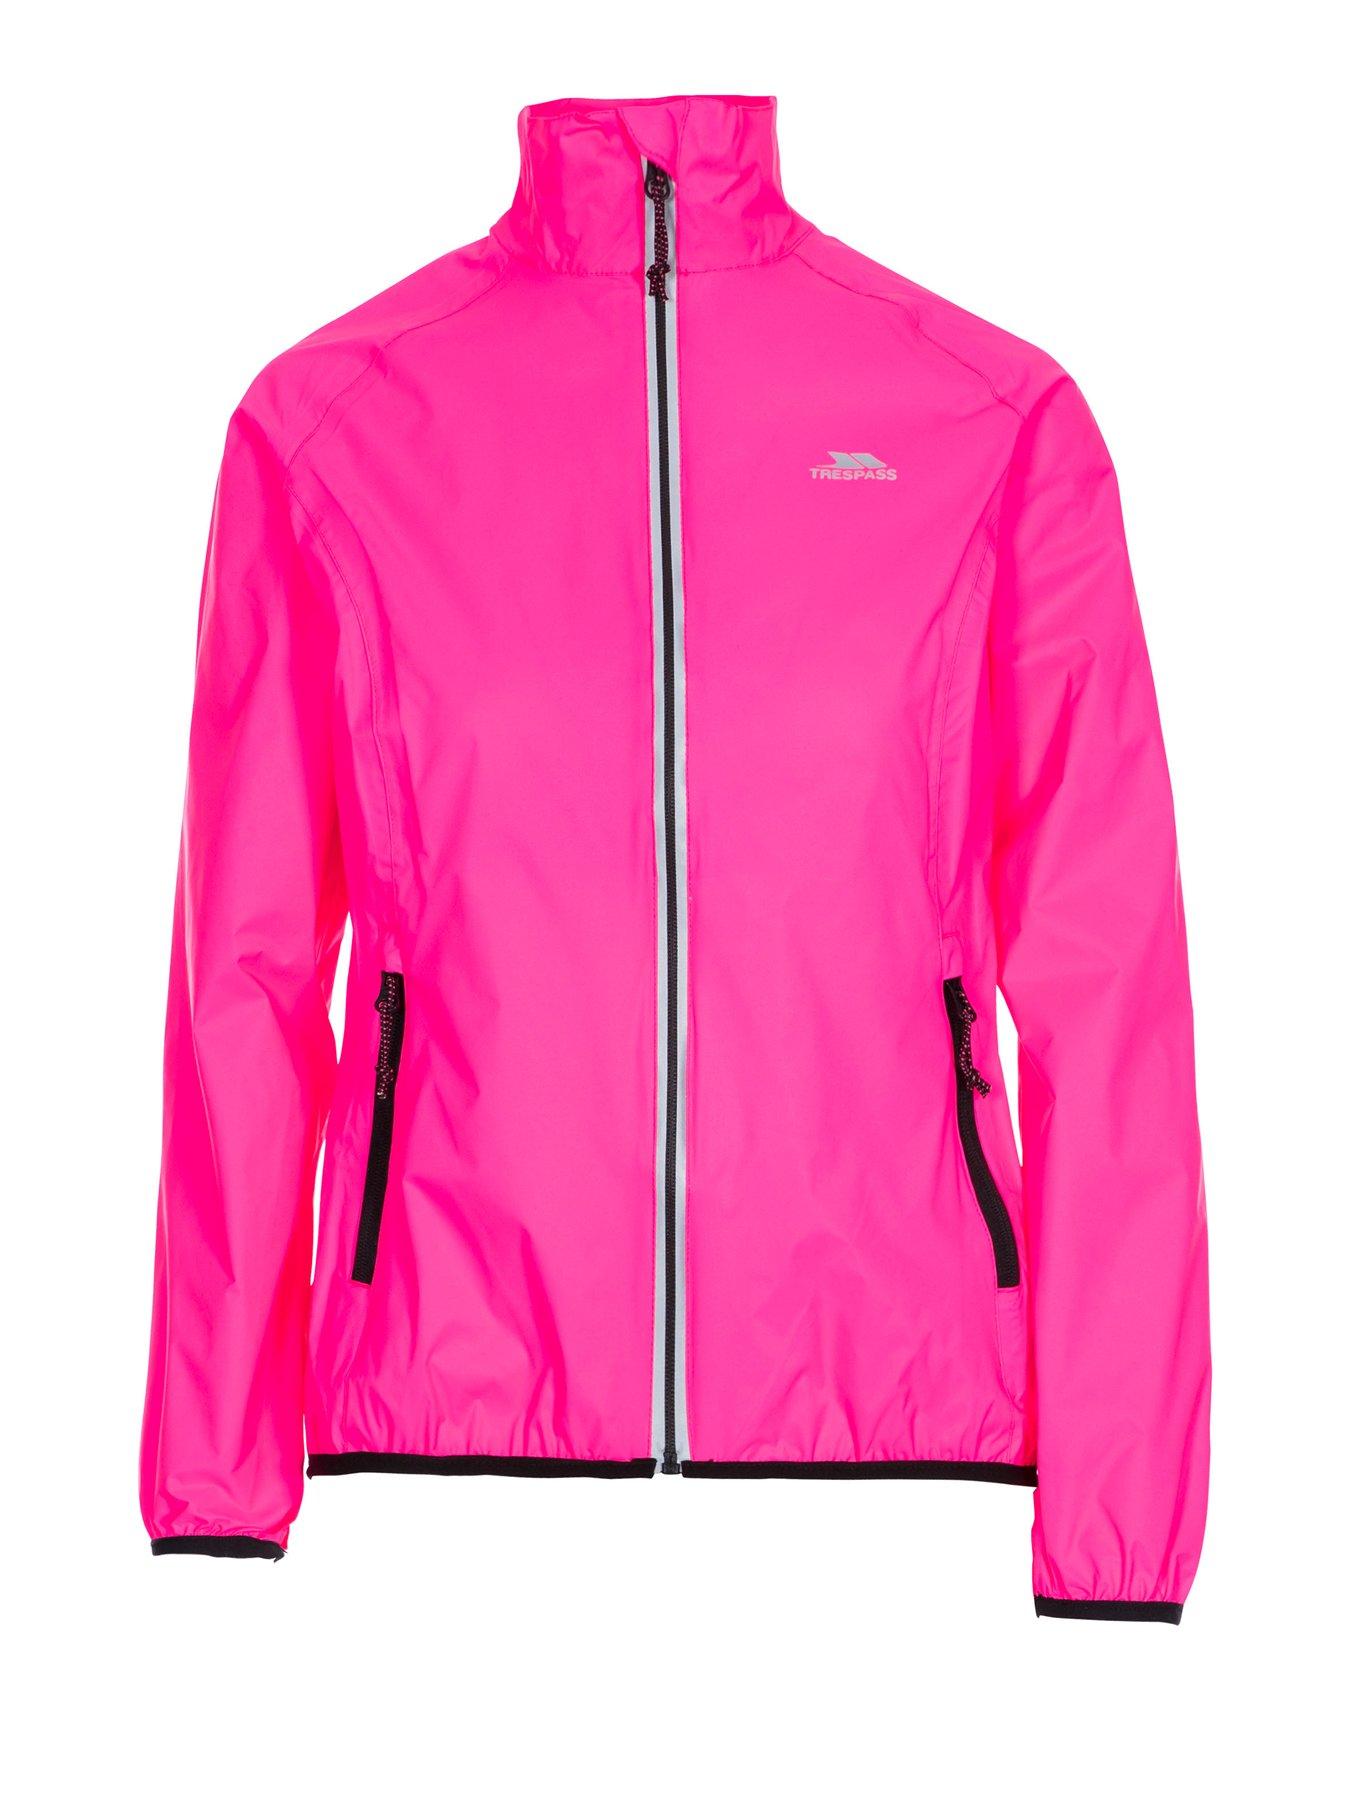 Women Beaming Full Zip Jacket - Pink/Black